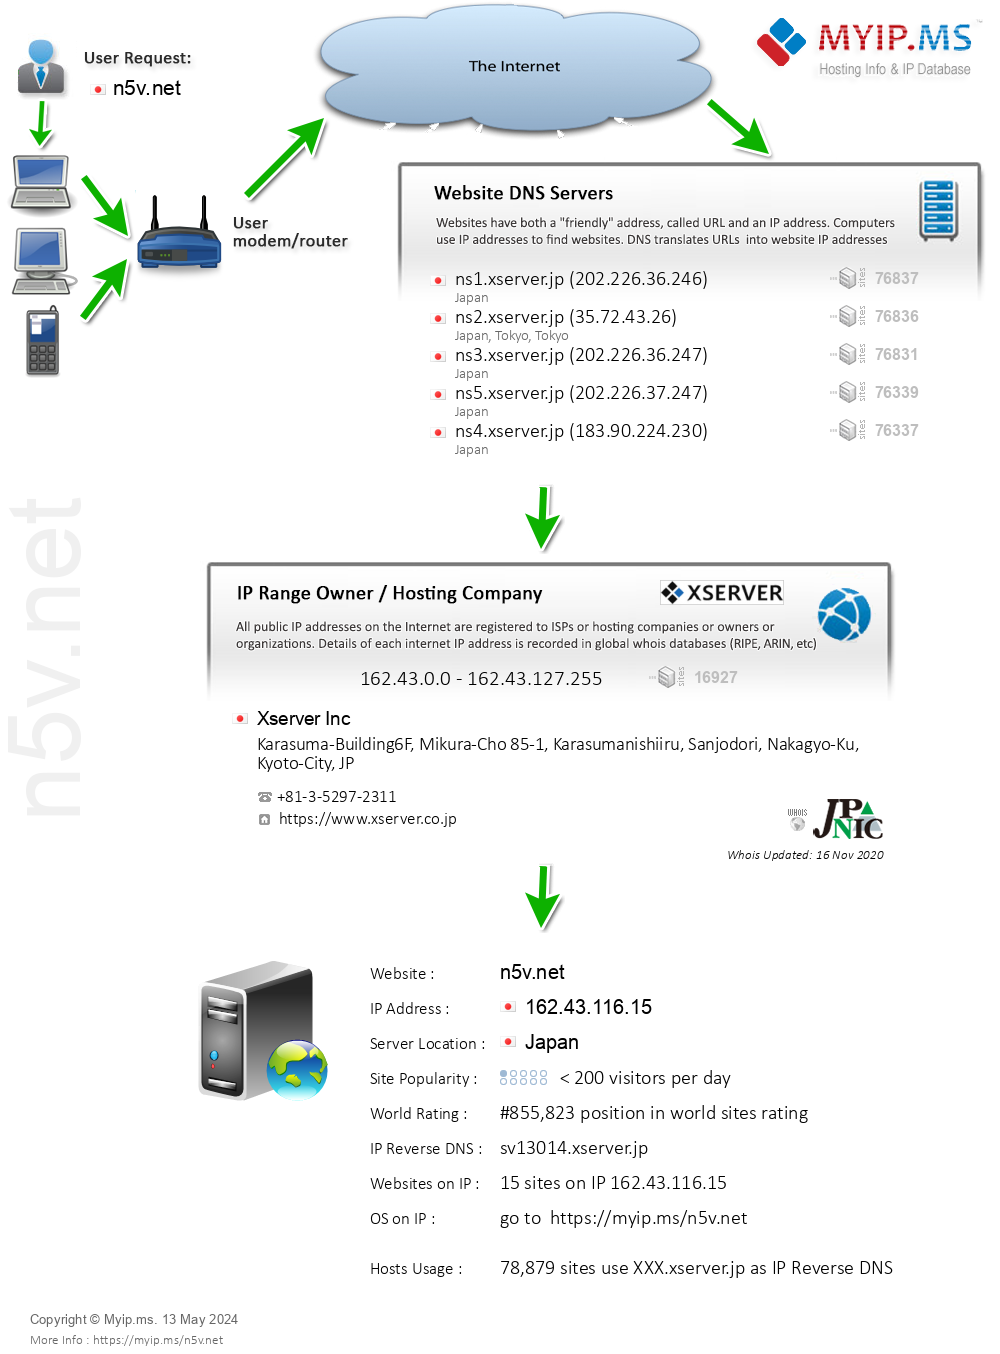 N5v.net - Website Hosting Visual IP Diagram